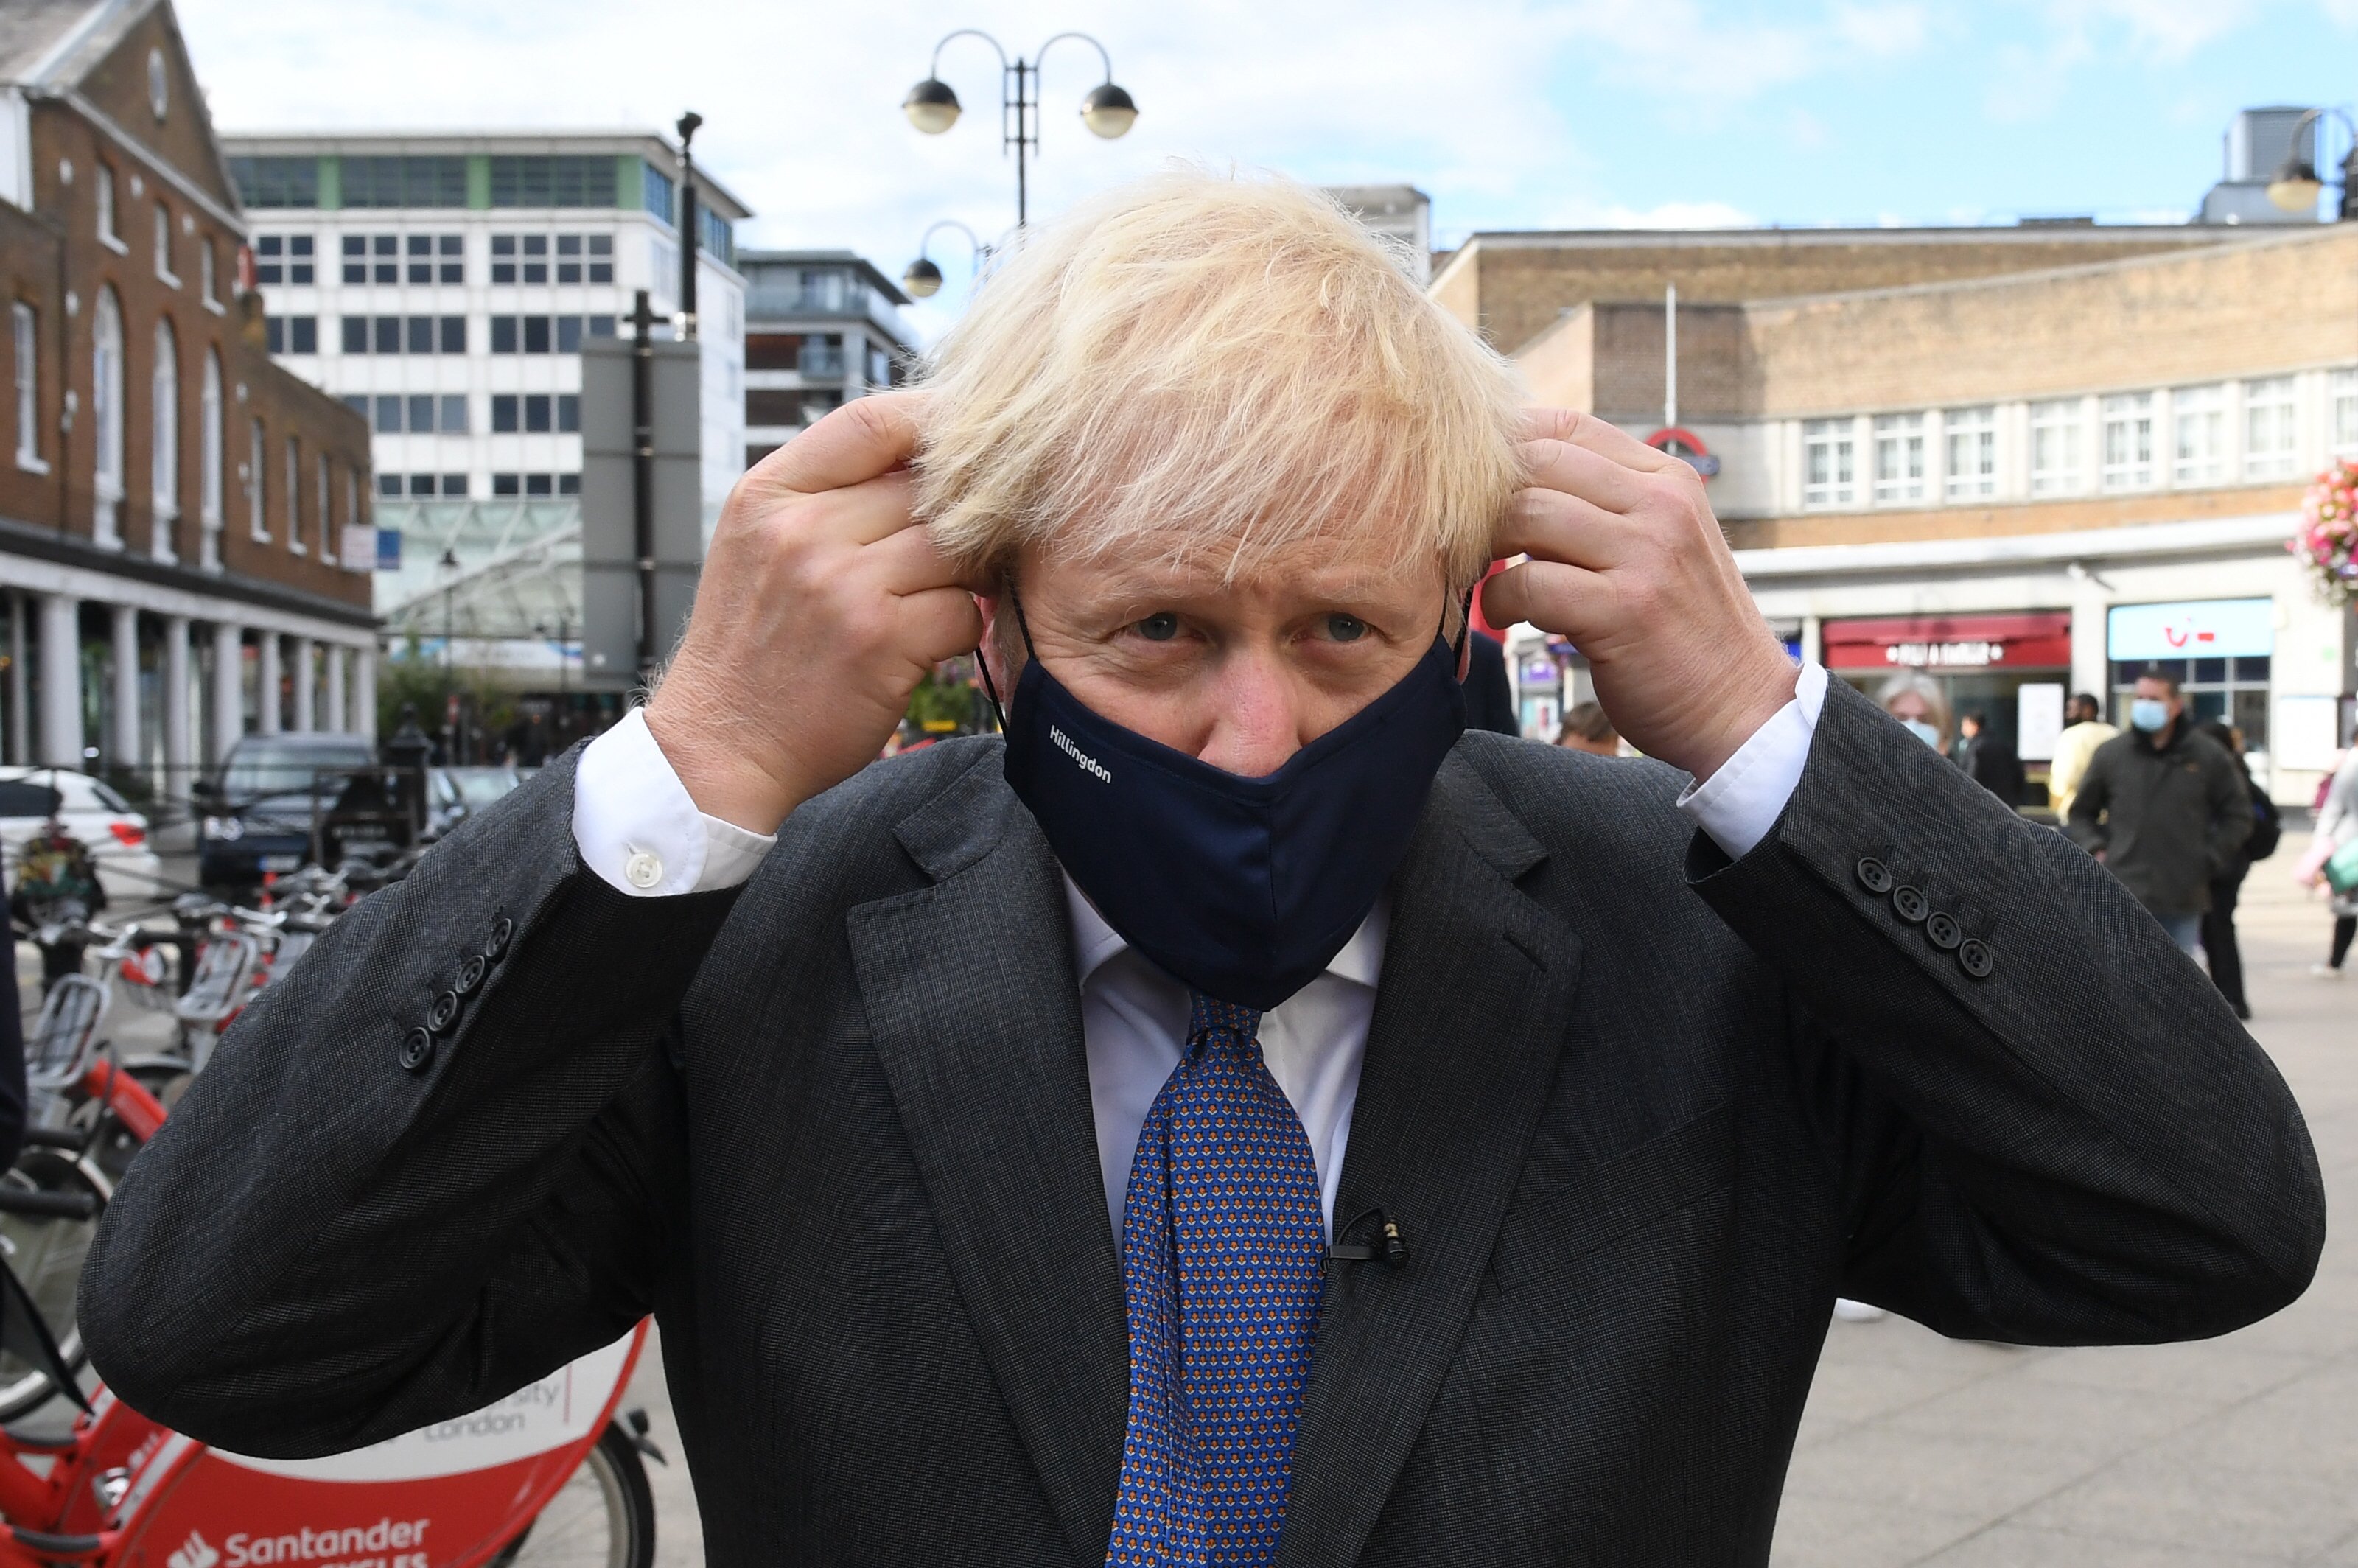 Las presiones de Boris Johnson a la BBC durante la pandemia: prohibido decir "confinamiento"